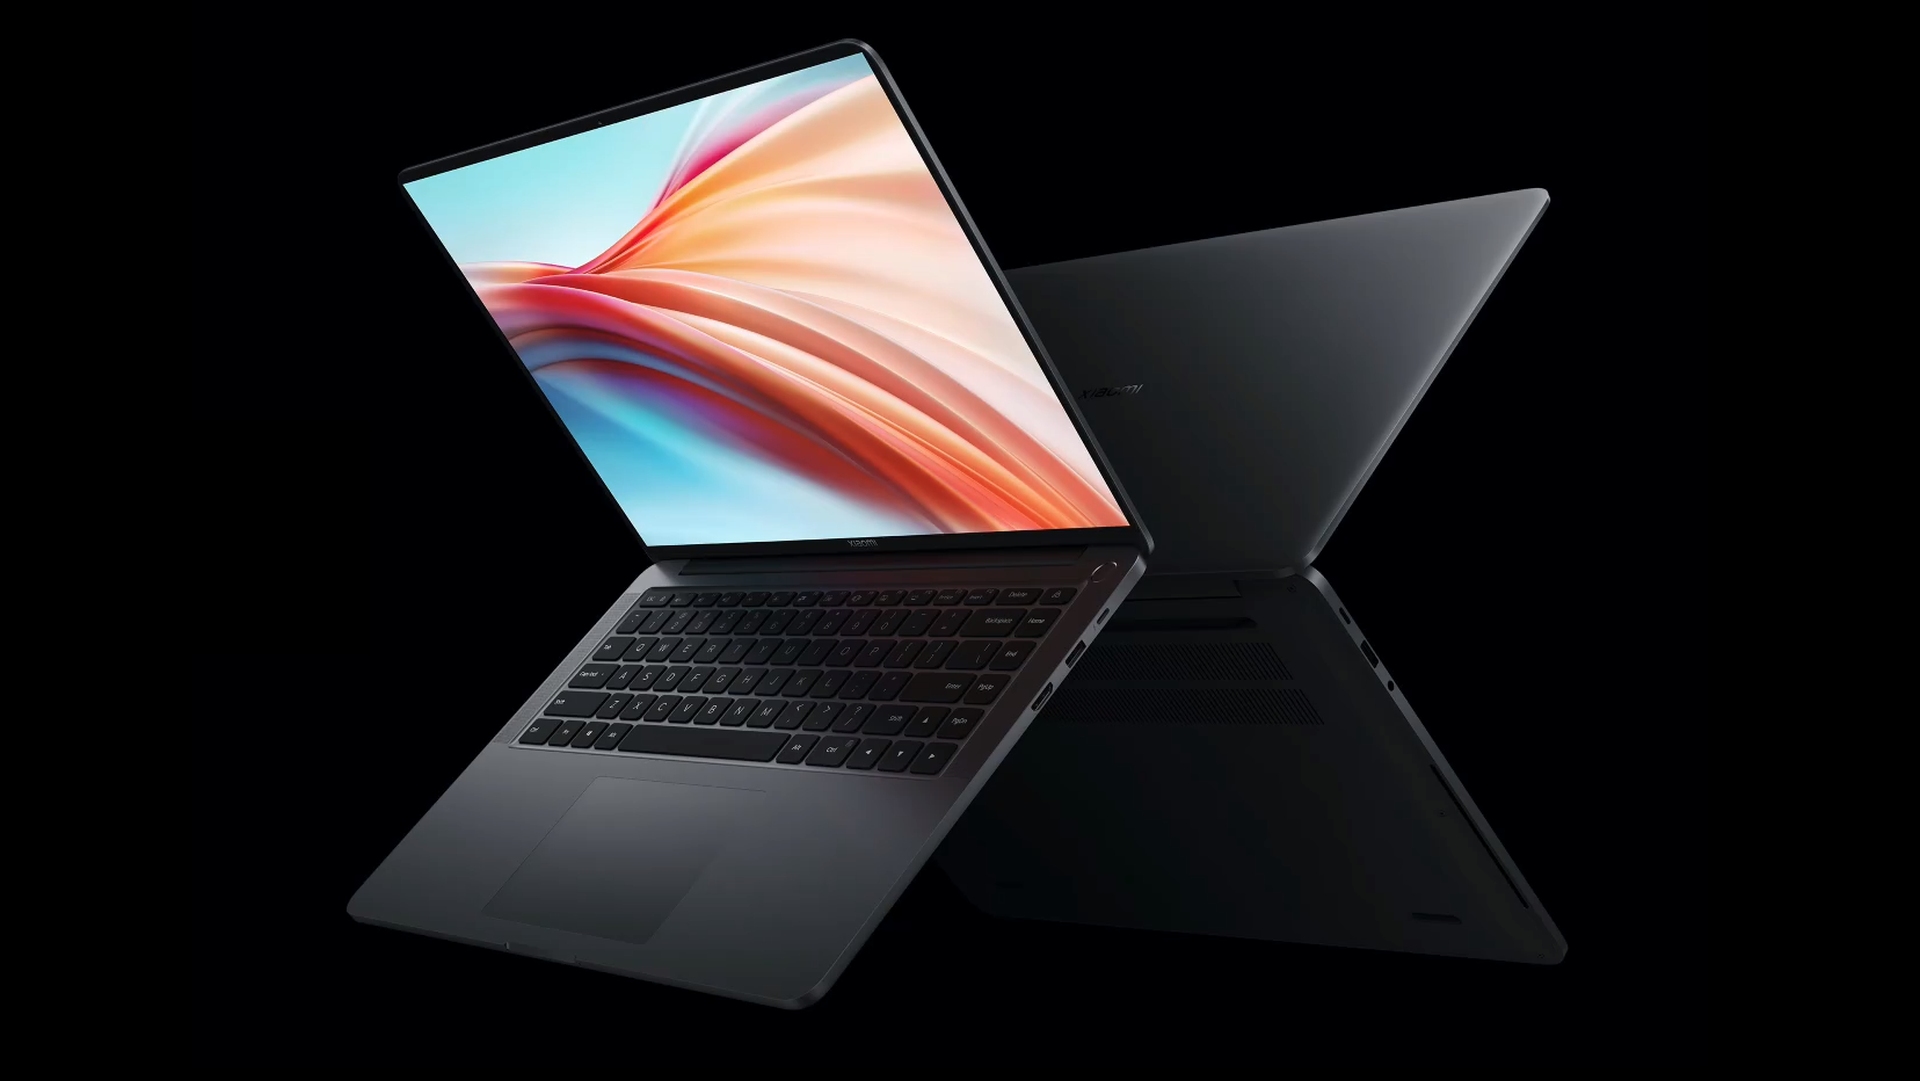 Xiaomi Notebook Pro 120G -  External Reviews